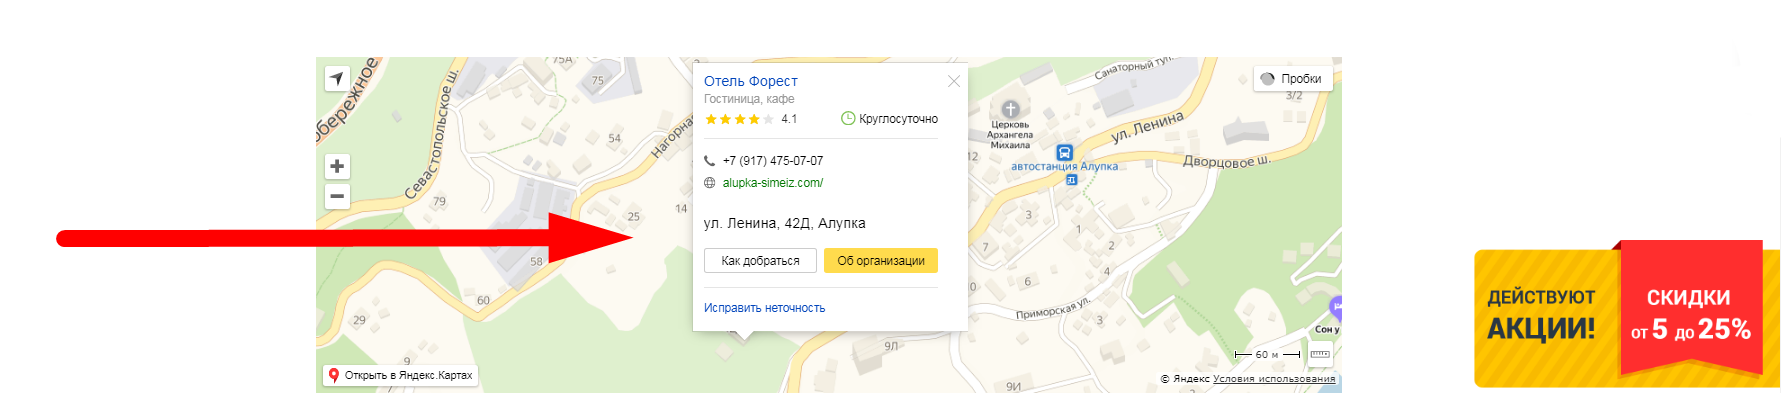 карточка организации в Яндекс-справочнике